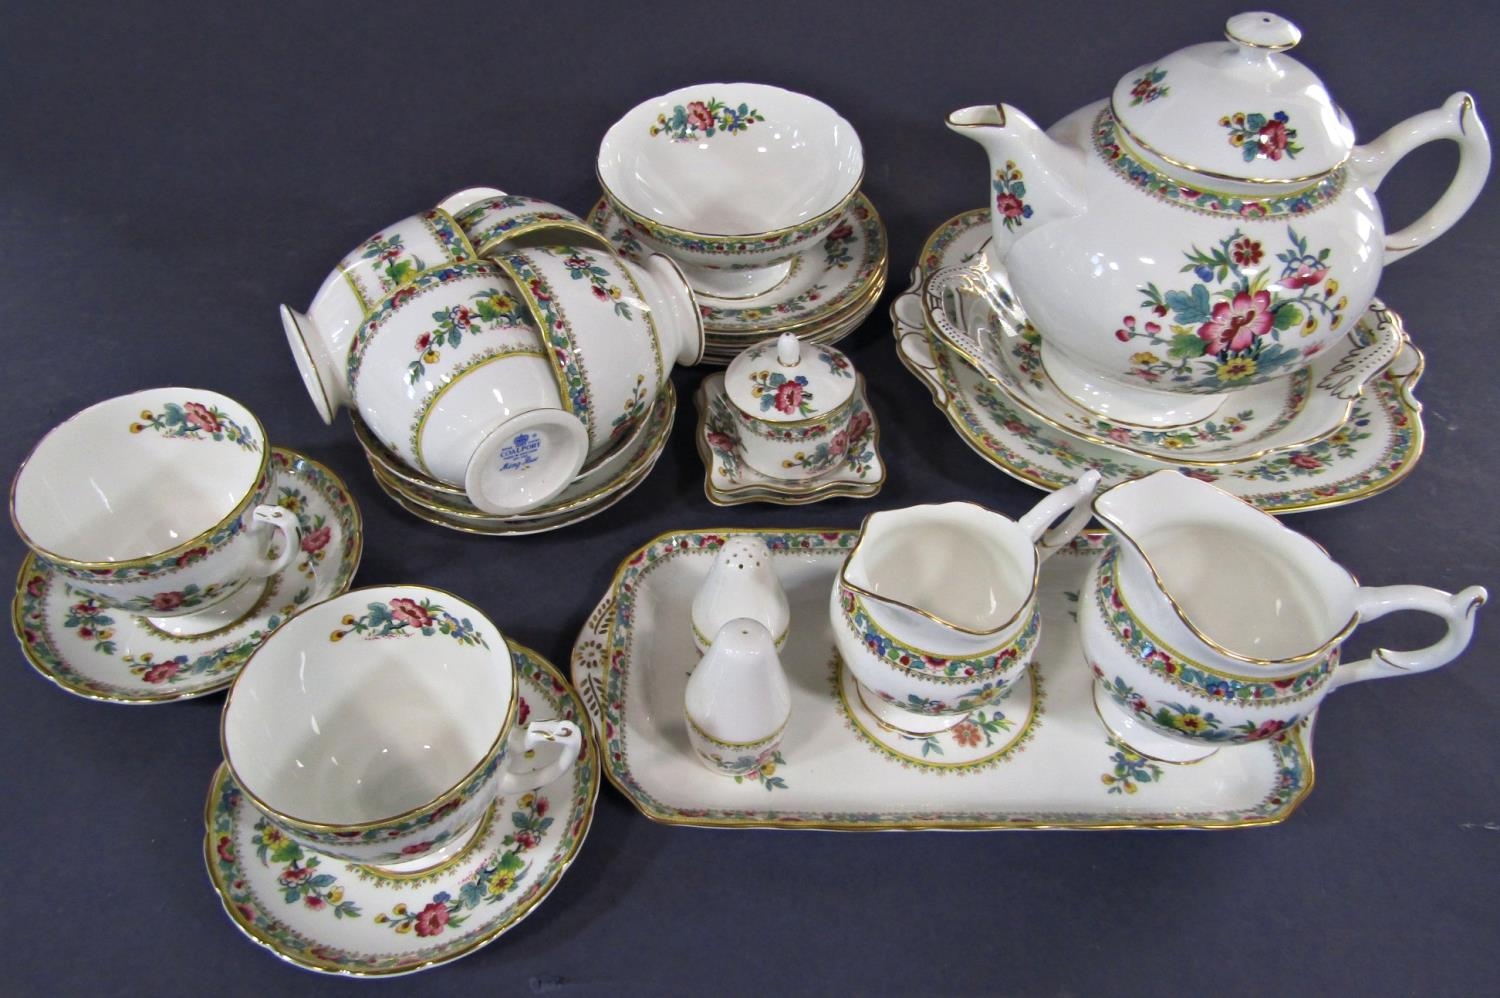 A collection of Coalport Ming Rose tea wares comprising teapot, milk jug, cream jug, sugar bowl, six